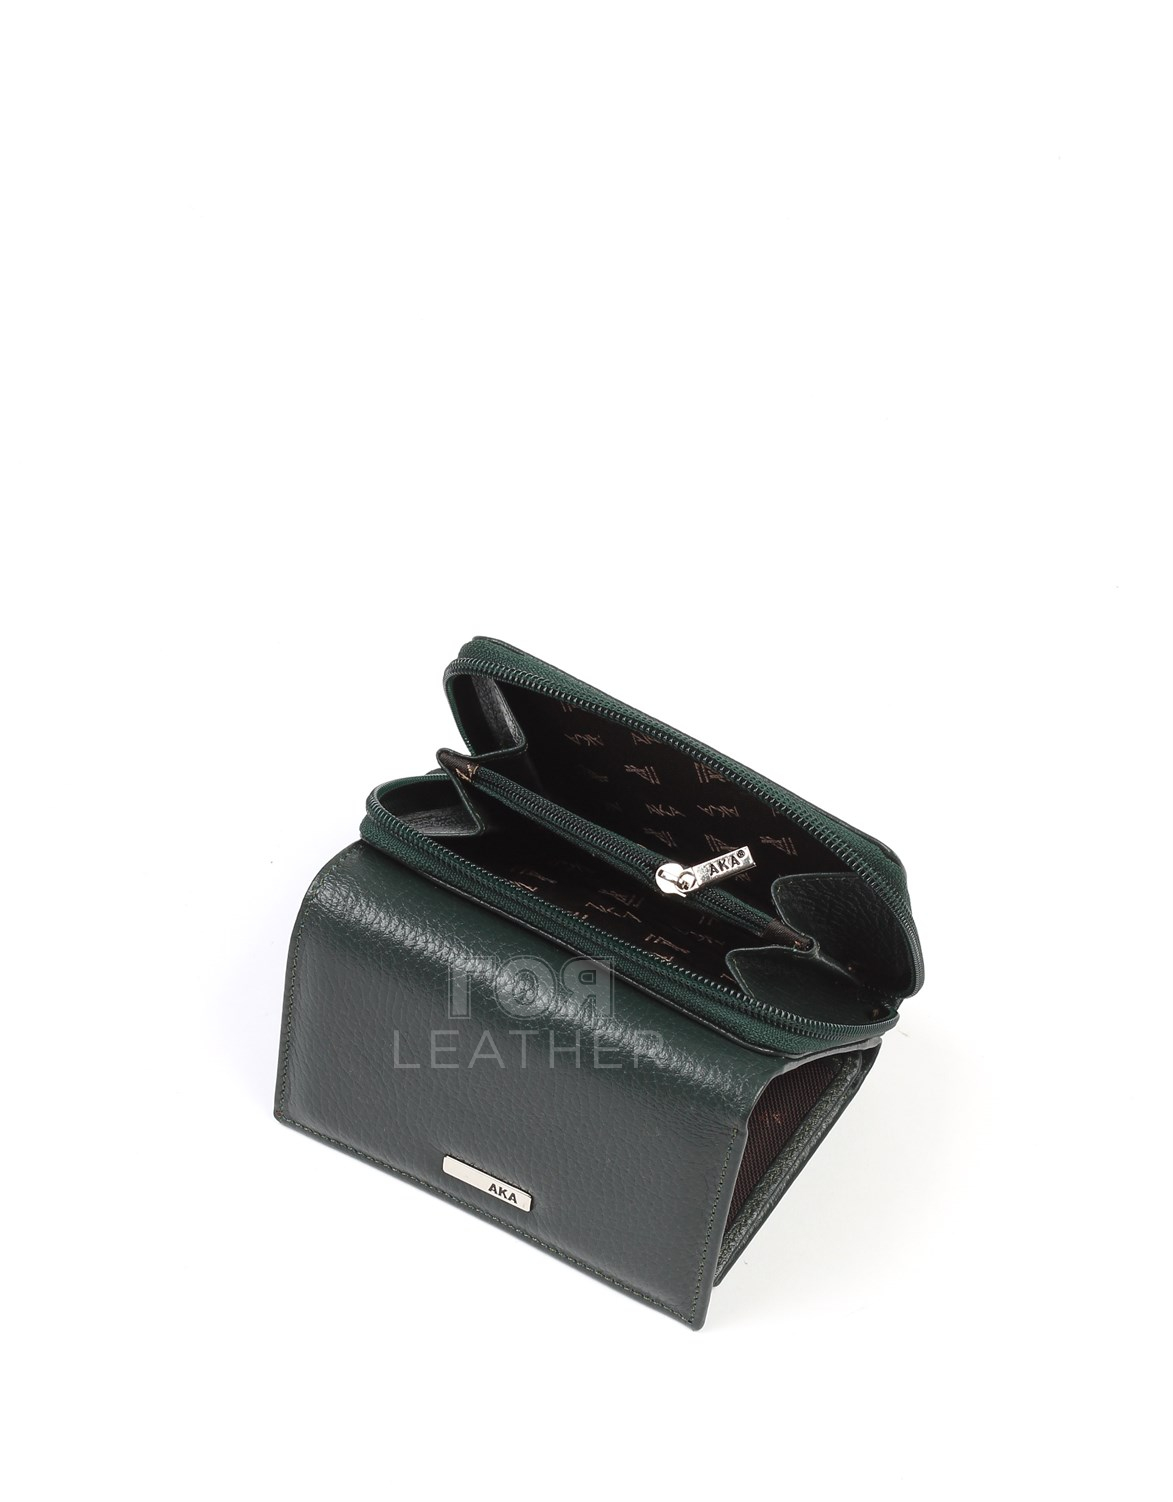 Дамски кожен портфейл модел- 467 Продуктът е ръчно изработен от 100% естествена телешка кожа и не съдържа никакви вредни за здравето активни вещества. Нов луксозен модел дамски портфейл от ГОЯ Leather.